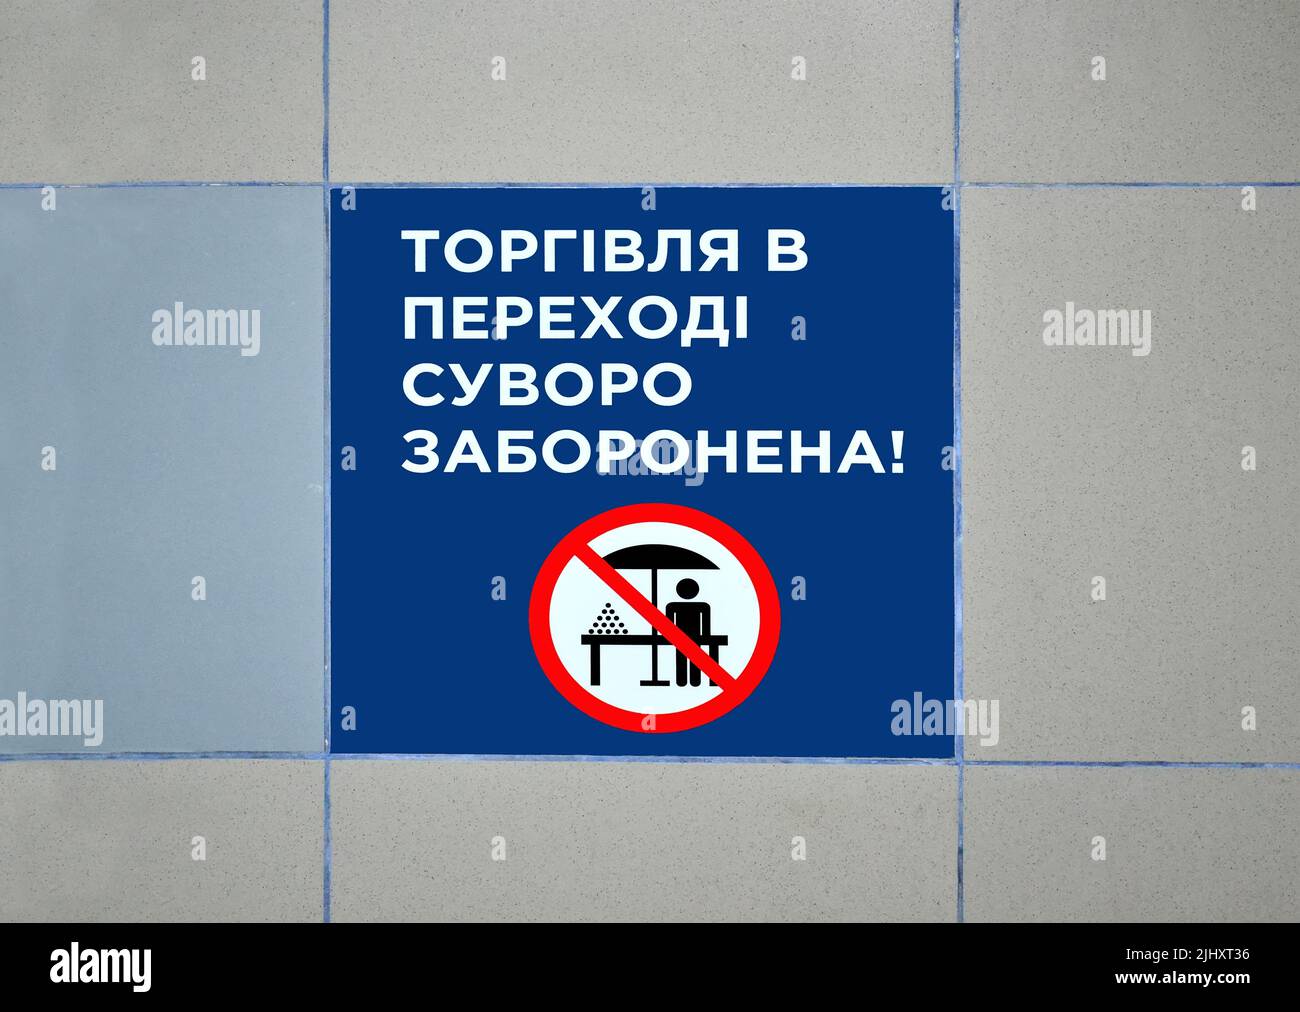 el comercio en el paso subterráneo está estrictamente prohibido como texto en idioma ucraniano, restricción pública de la diversidad Foto de stock